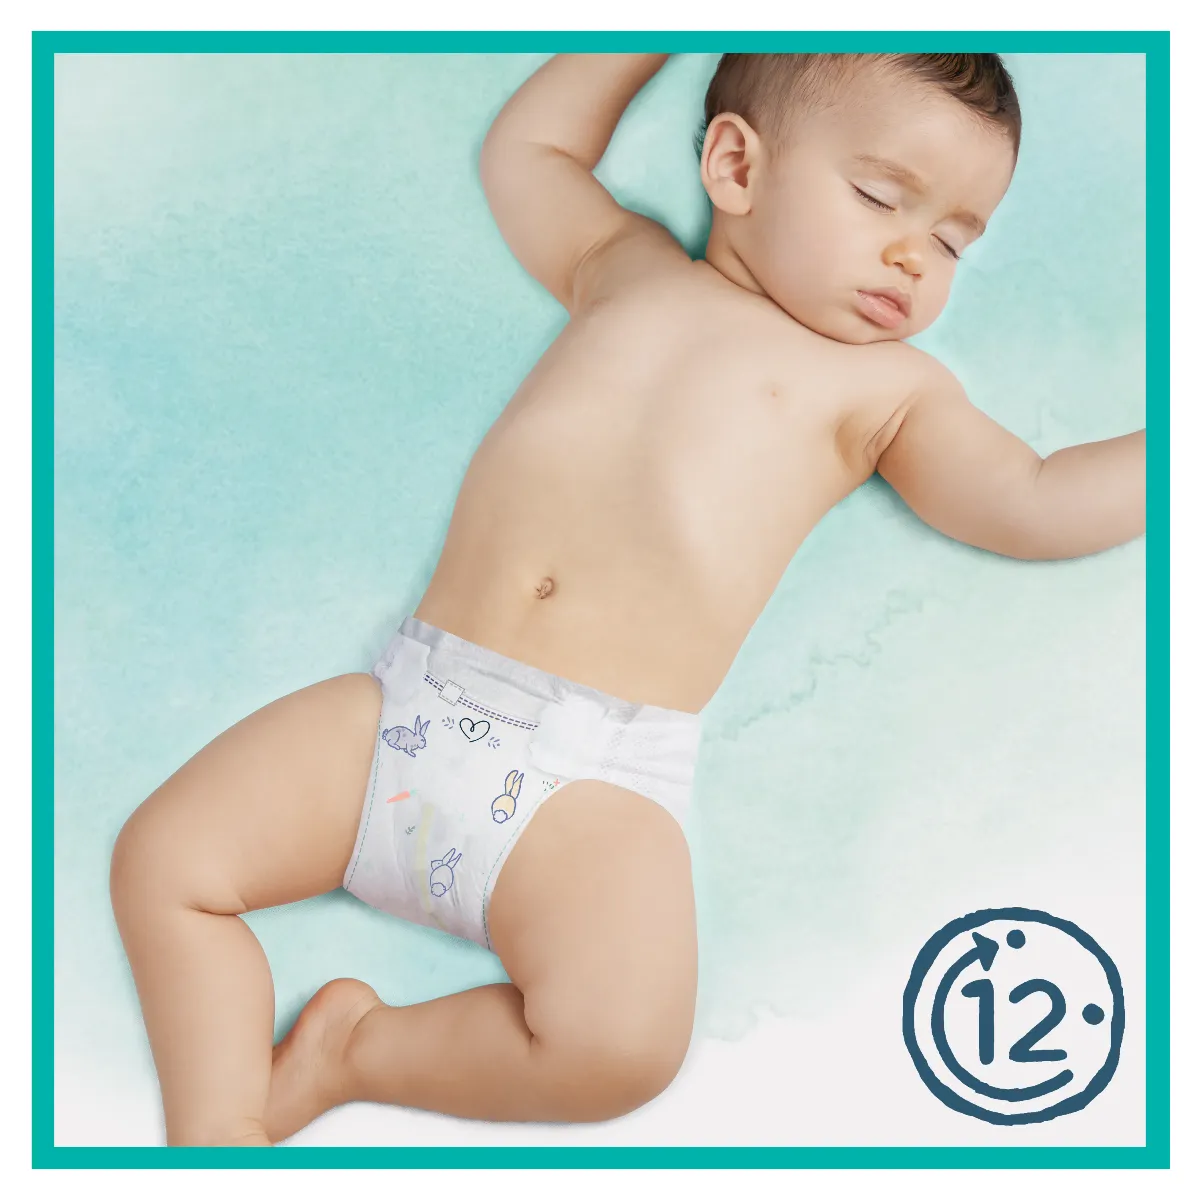 Pampers Harmonie Newborn pieluszki jednorazowe rozmiar 1, 2-5 kg, 26 szt. 